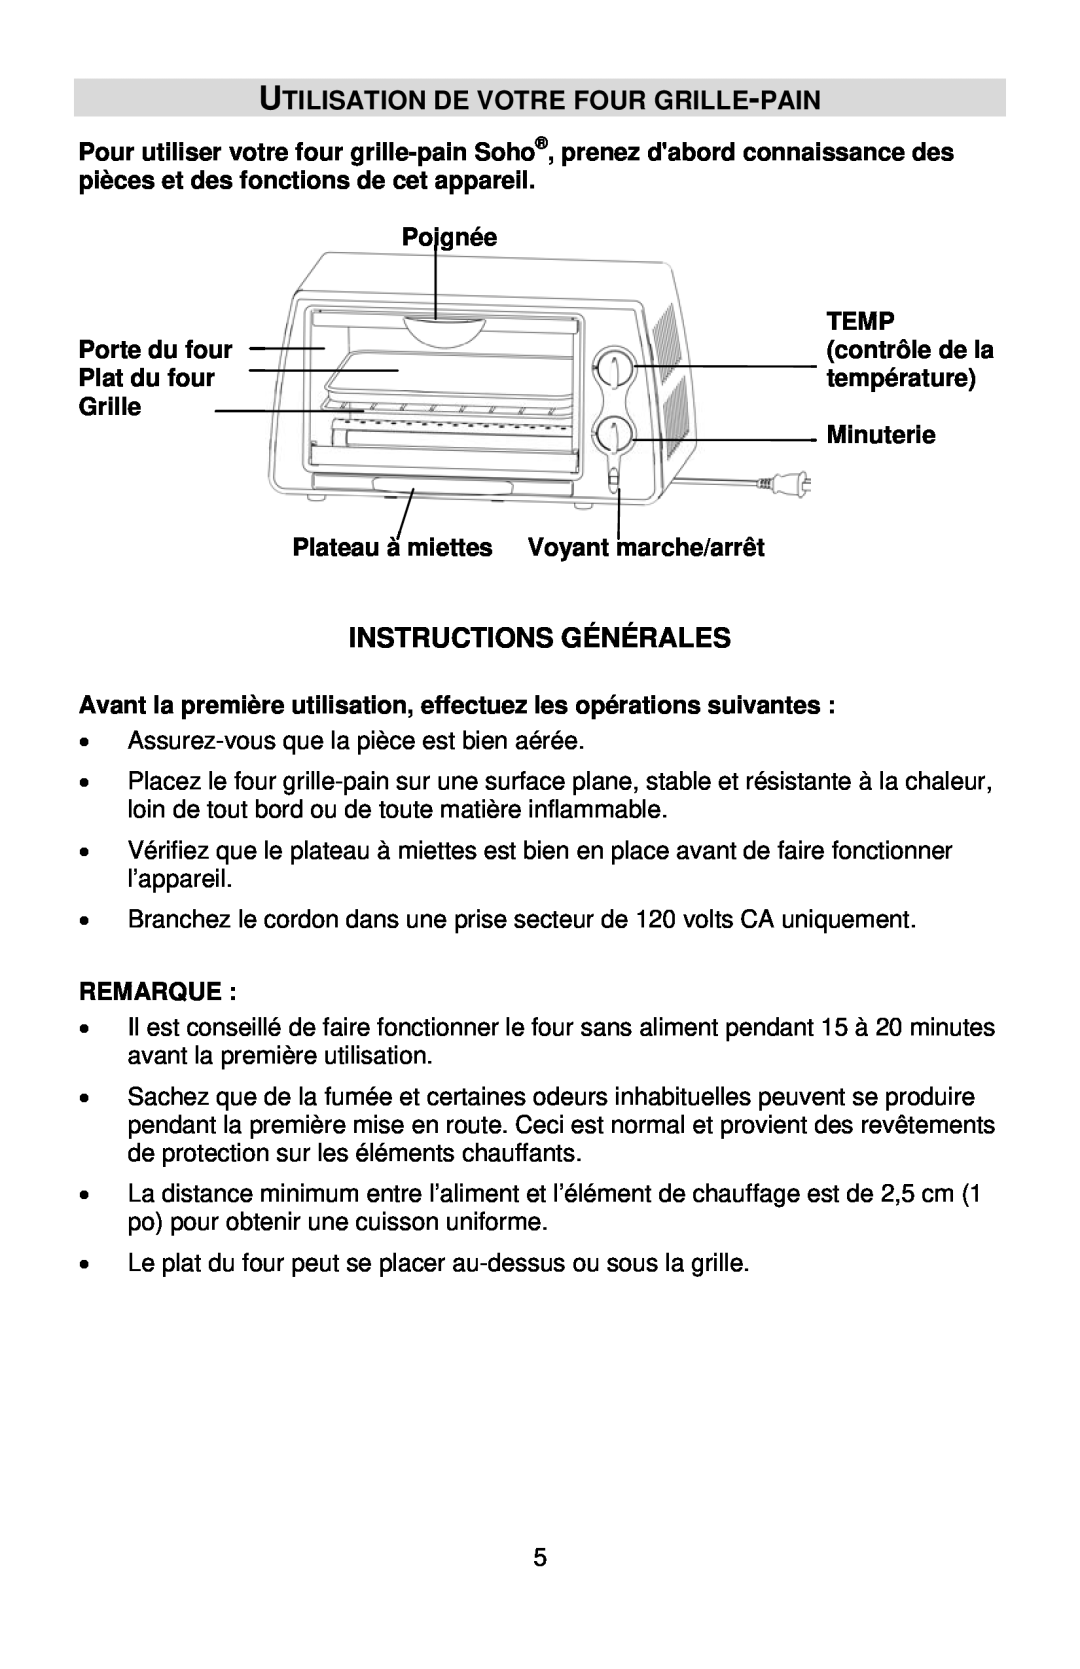 West Bend L5704, SHTO100 instruction manual Utilisation De Votre Four Grille-Pain, Instructions Générales 